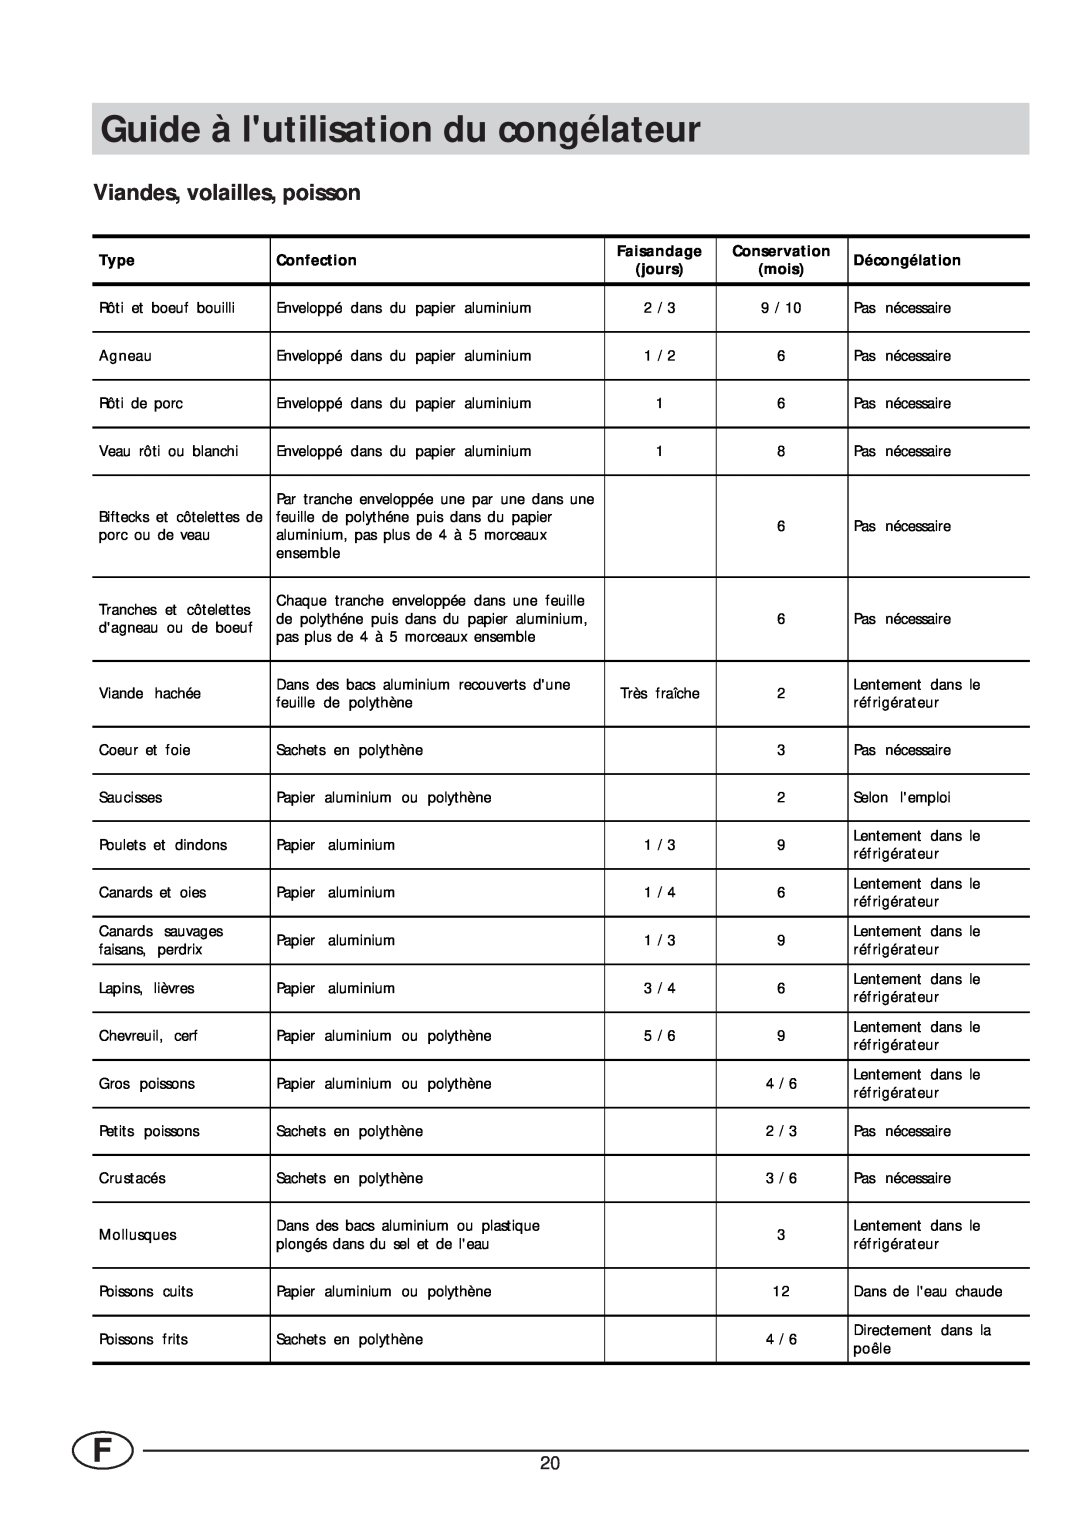 Smeg VR105NE1 manual Guide à lutilisation du congélateur, Viandes, volailles, poisson 